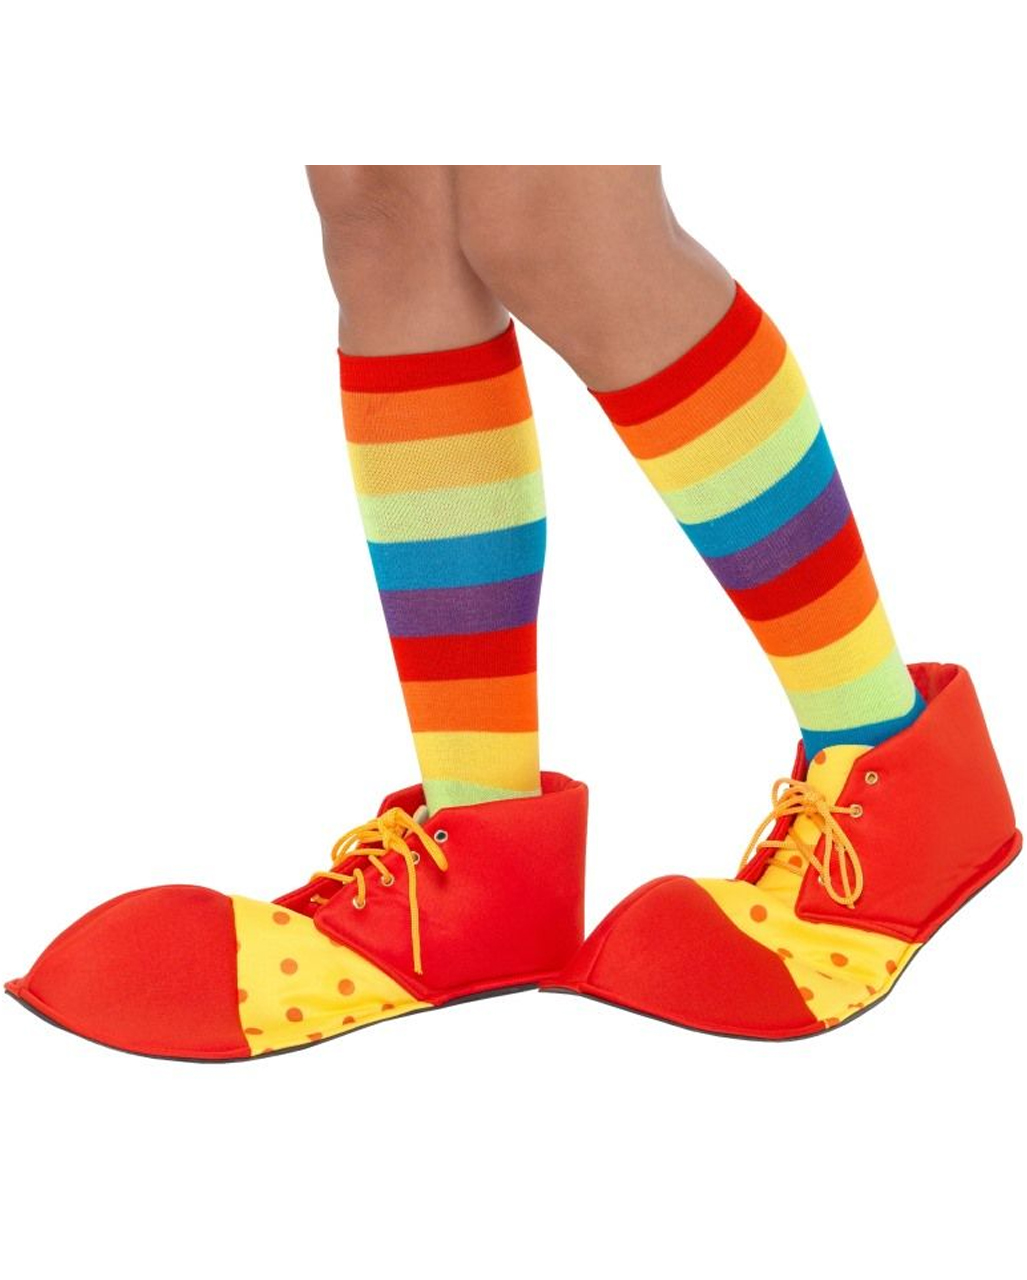 Clown Schuhe rot-gelb als Kostüm-Accessoires